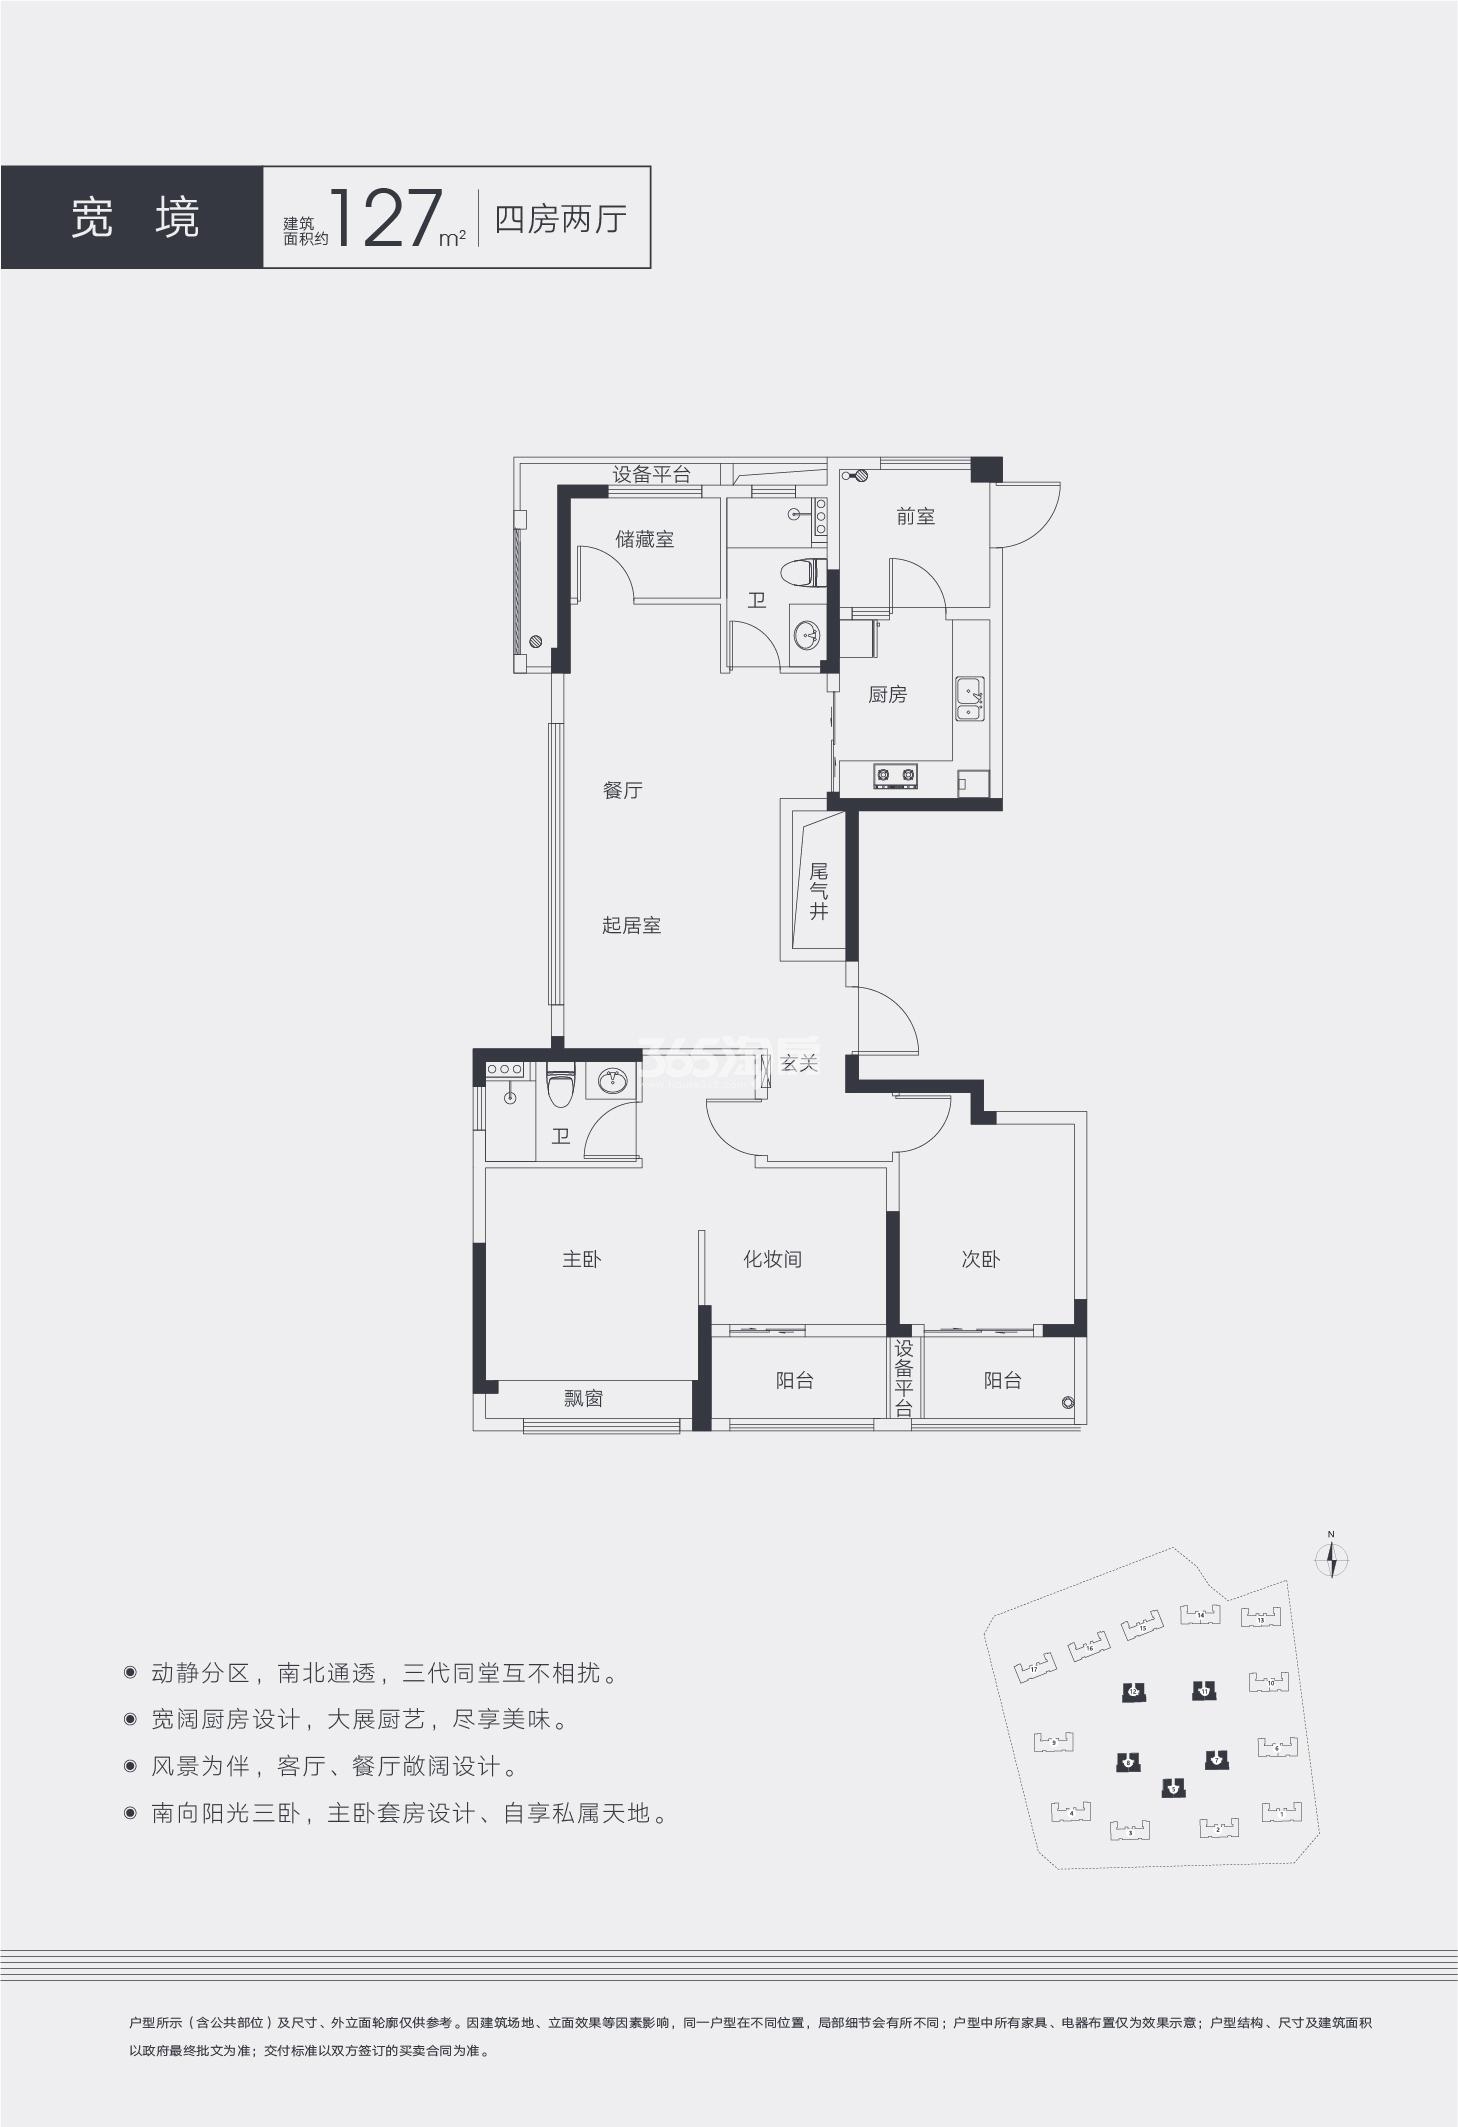 新视界公寓项目5、7、8、11、12号楼C户型 约127㎡